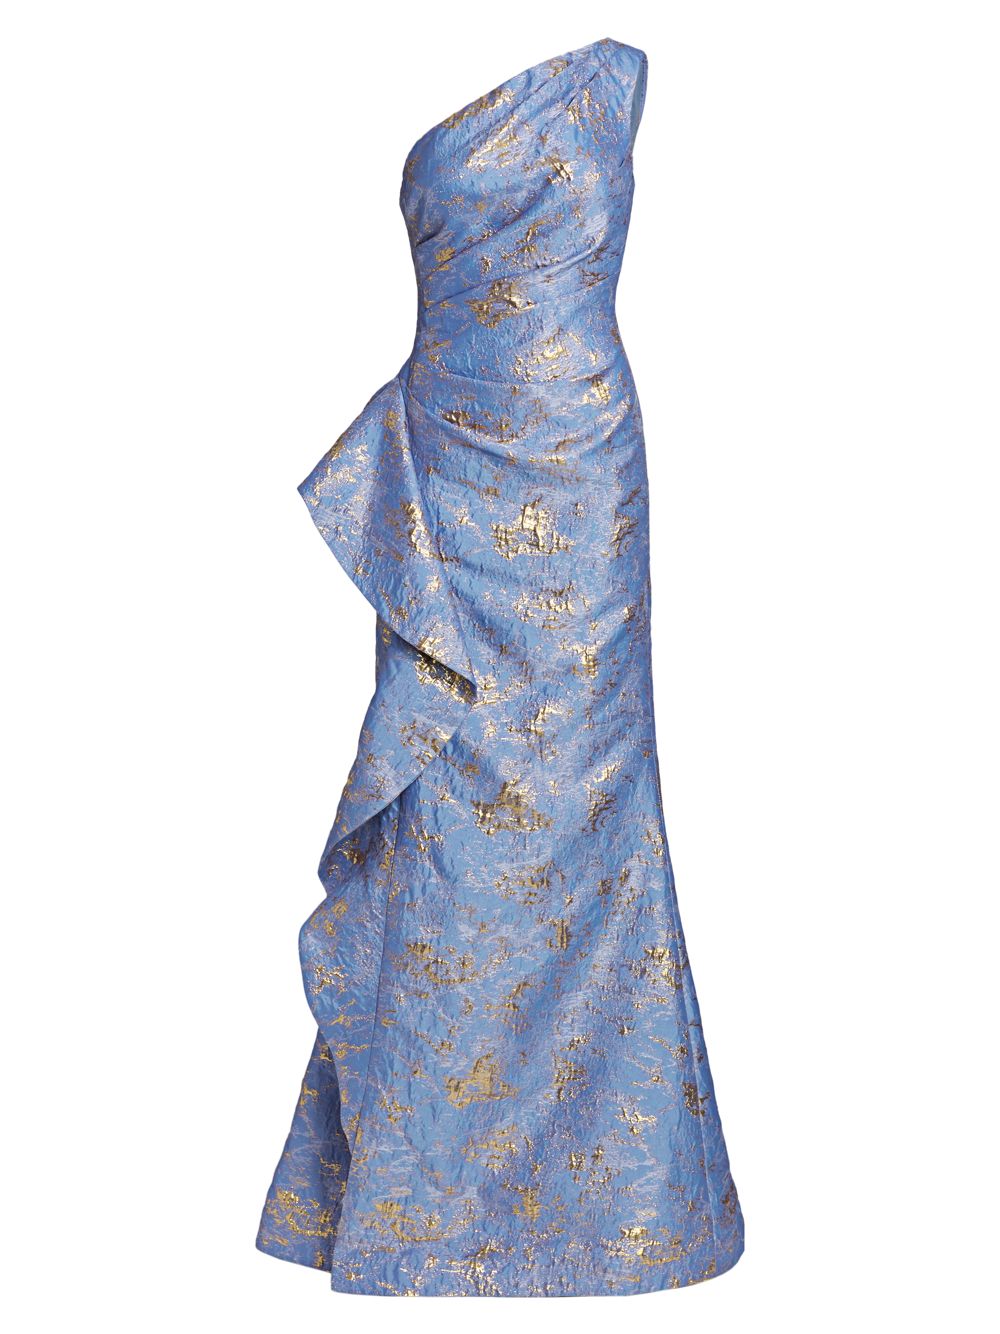 Жаккардовое платье на одно плечо Teri Jon by Rickie Freeman, синий